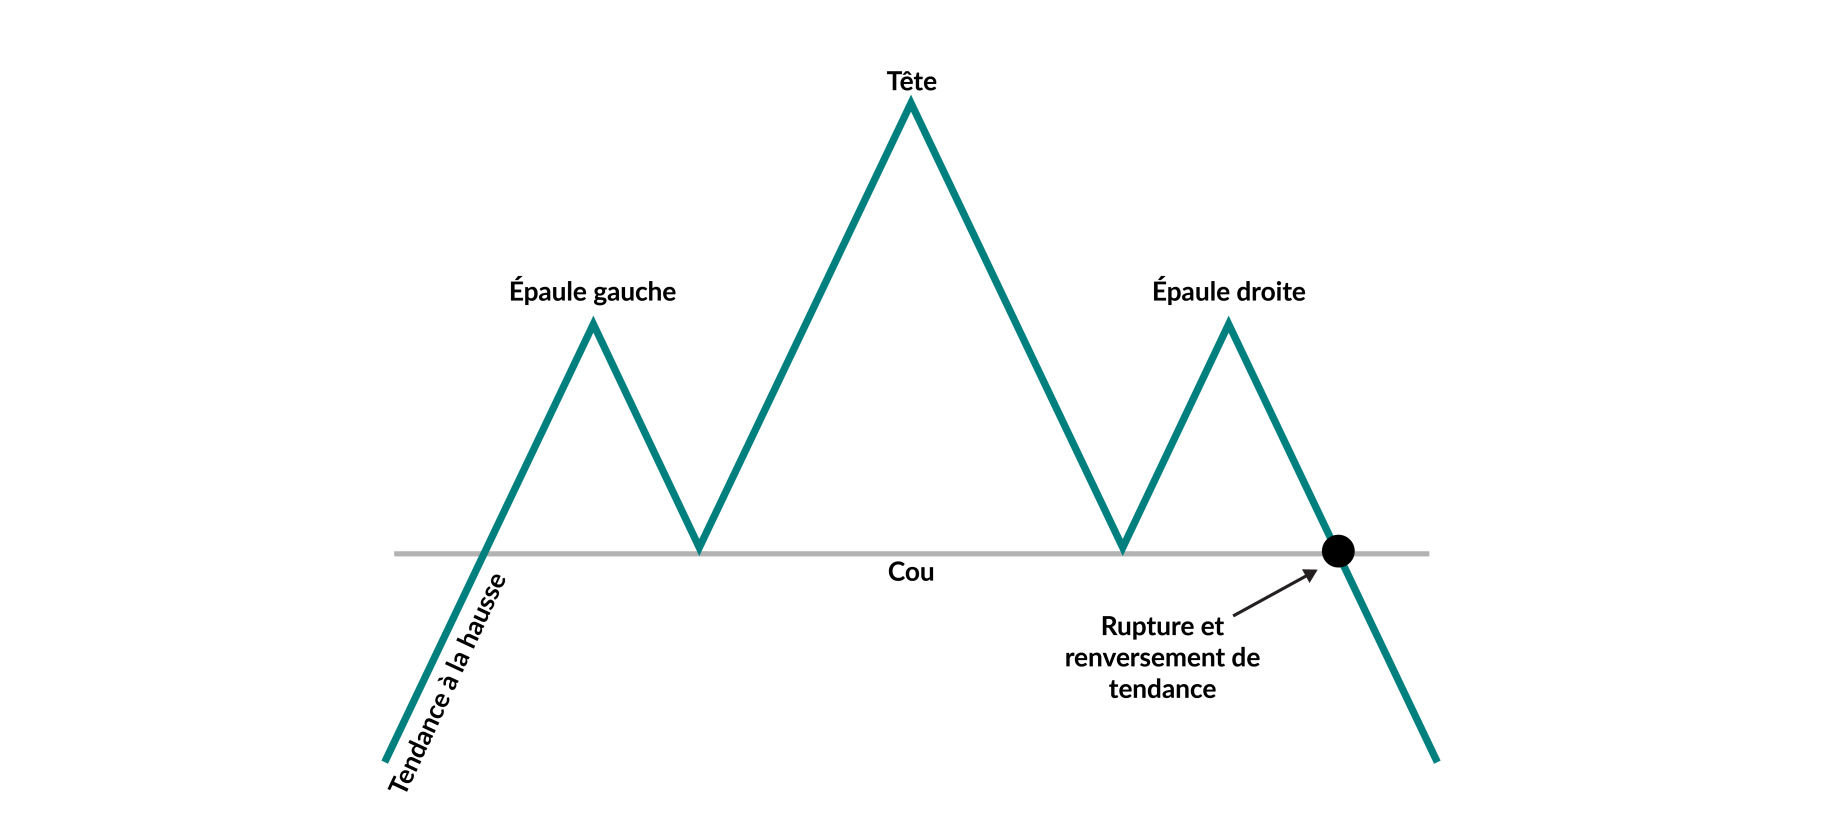 Un graphique montrant un exemple hypothétique d'une stratégie graphique boursière appelée « épaule-tête-épaule ». Il montre un graphique boursier affichant un sommet central (la tête) entre deux sommets plus petits (les deux épaules), où le franchissement d'un certain seuil de prix (la ligne de cou) détermine un renversement de tendance.